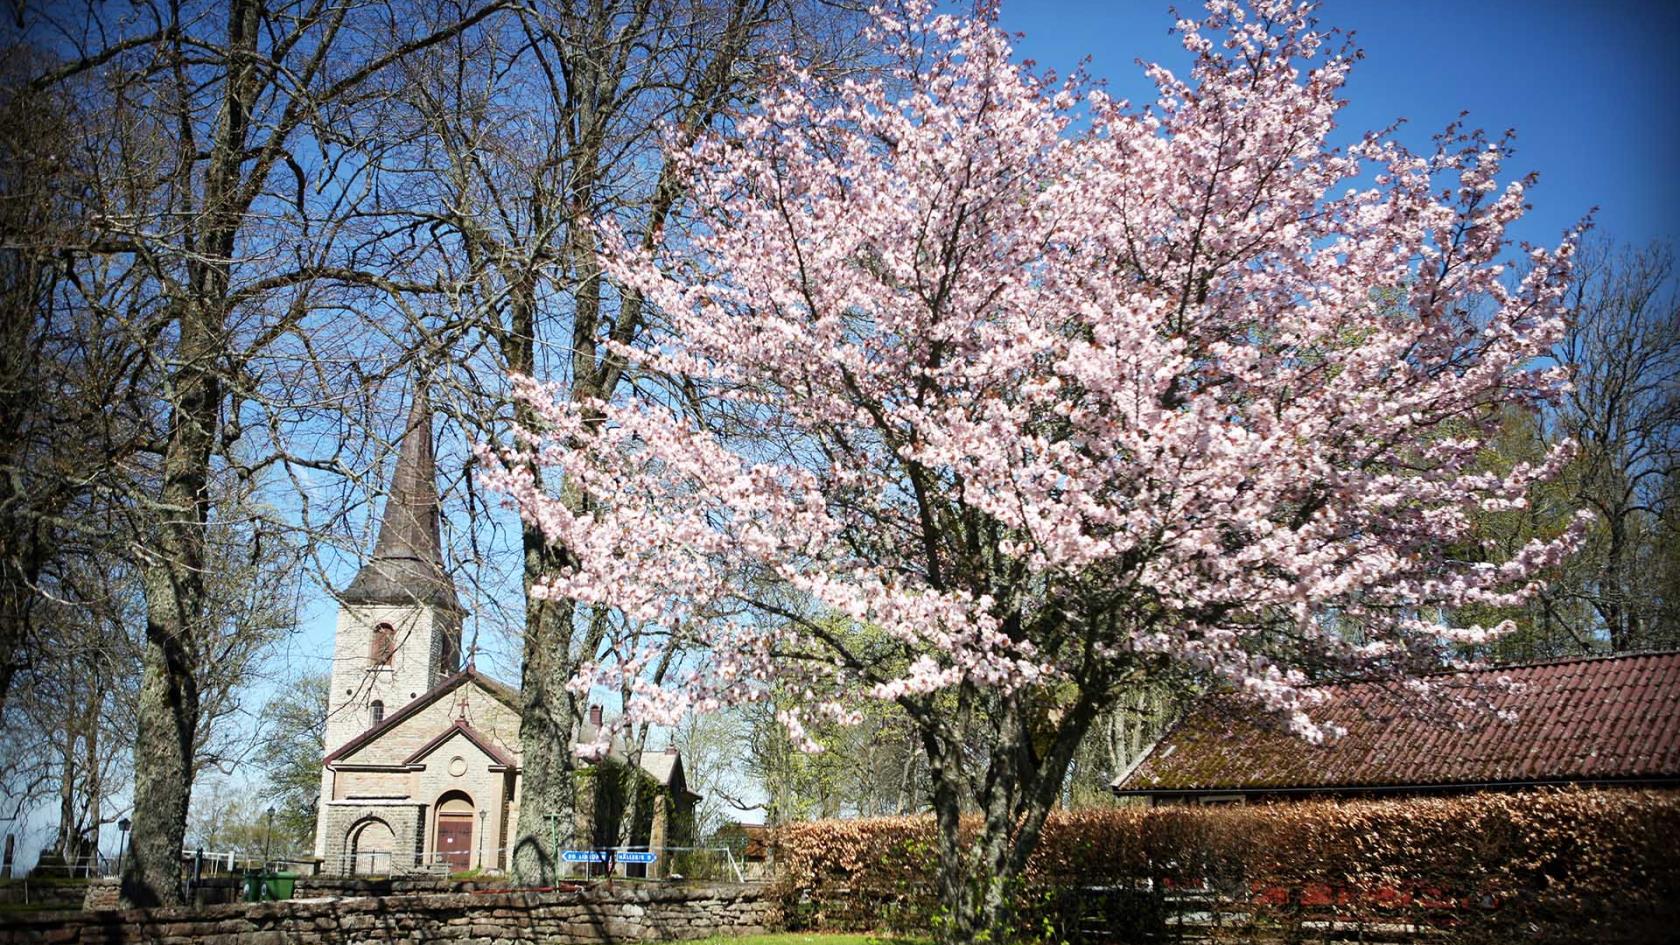 Medelplana kyrka exteriört i vårskrud och blommande träd.